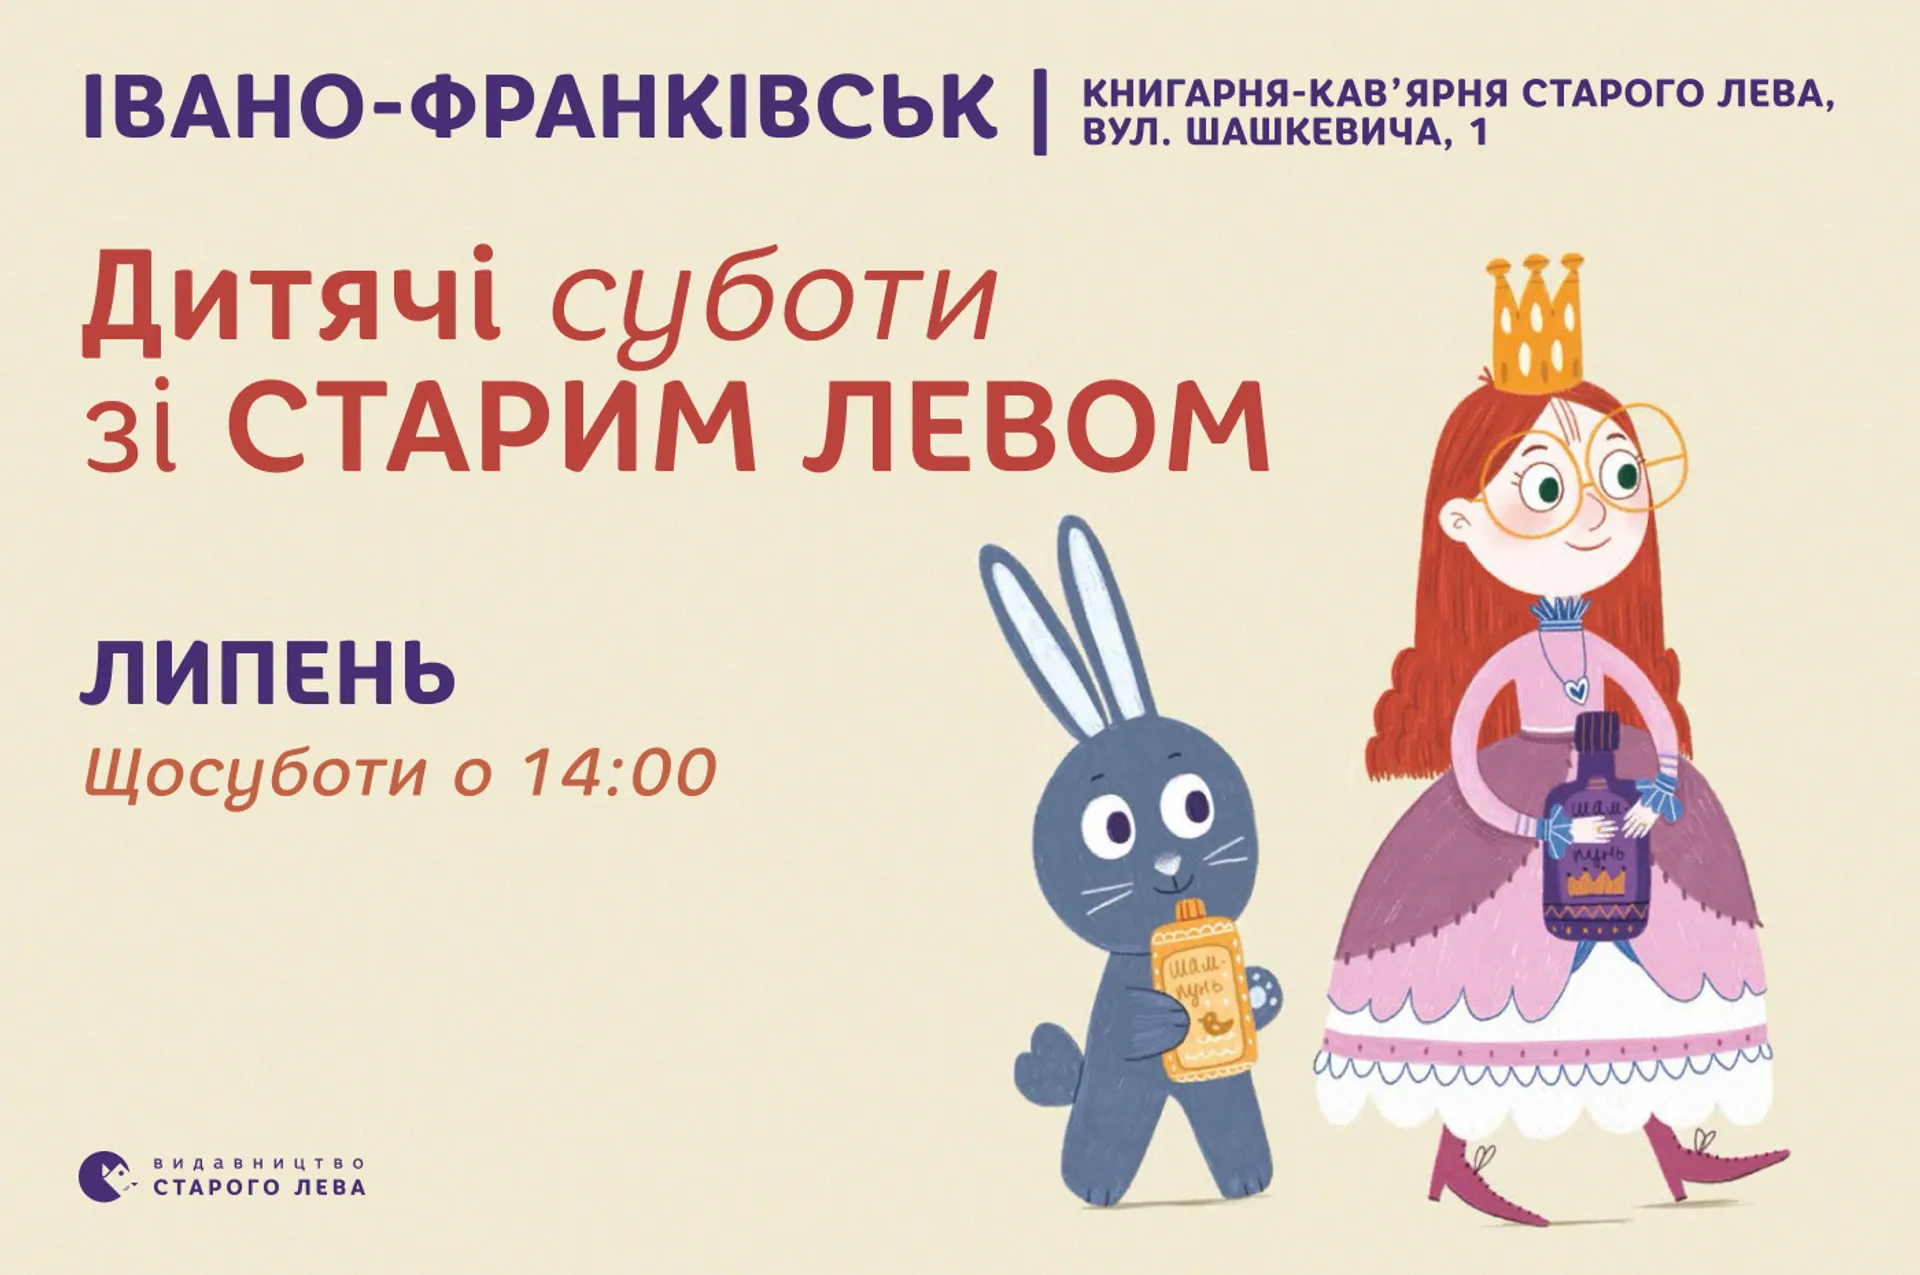 Запрошуємо на дитячі суботи зі Старим Левом в Івано-Франківську!